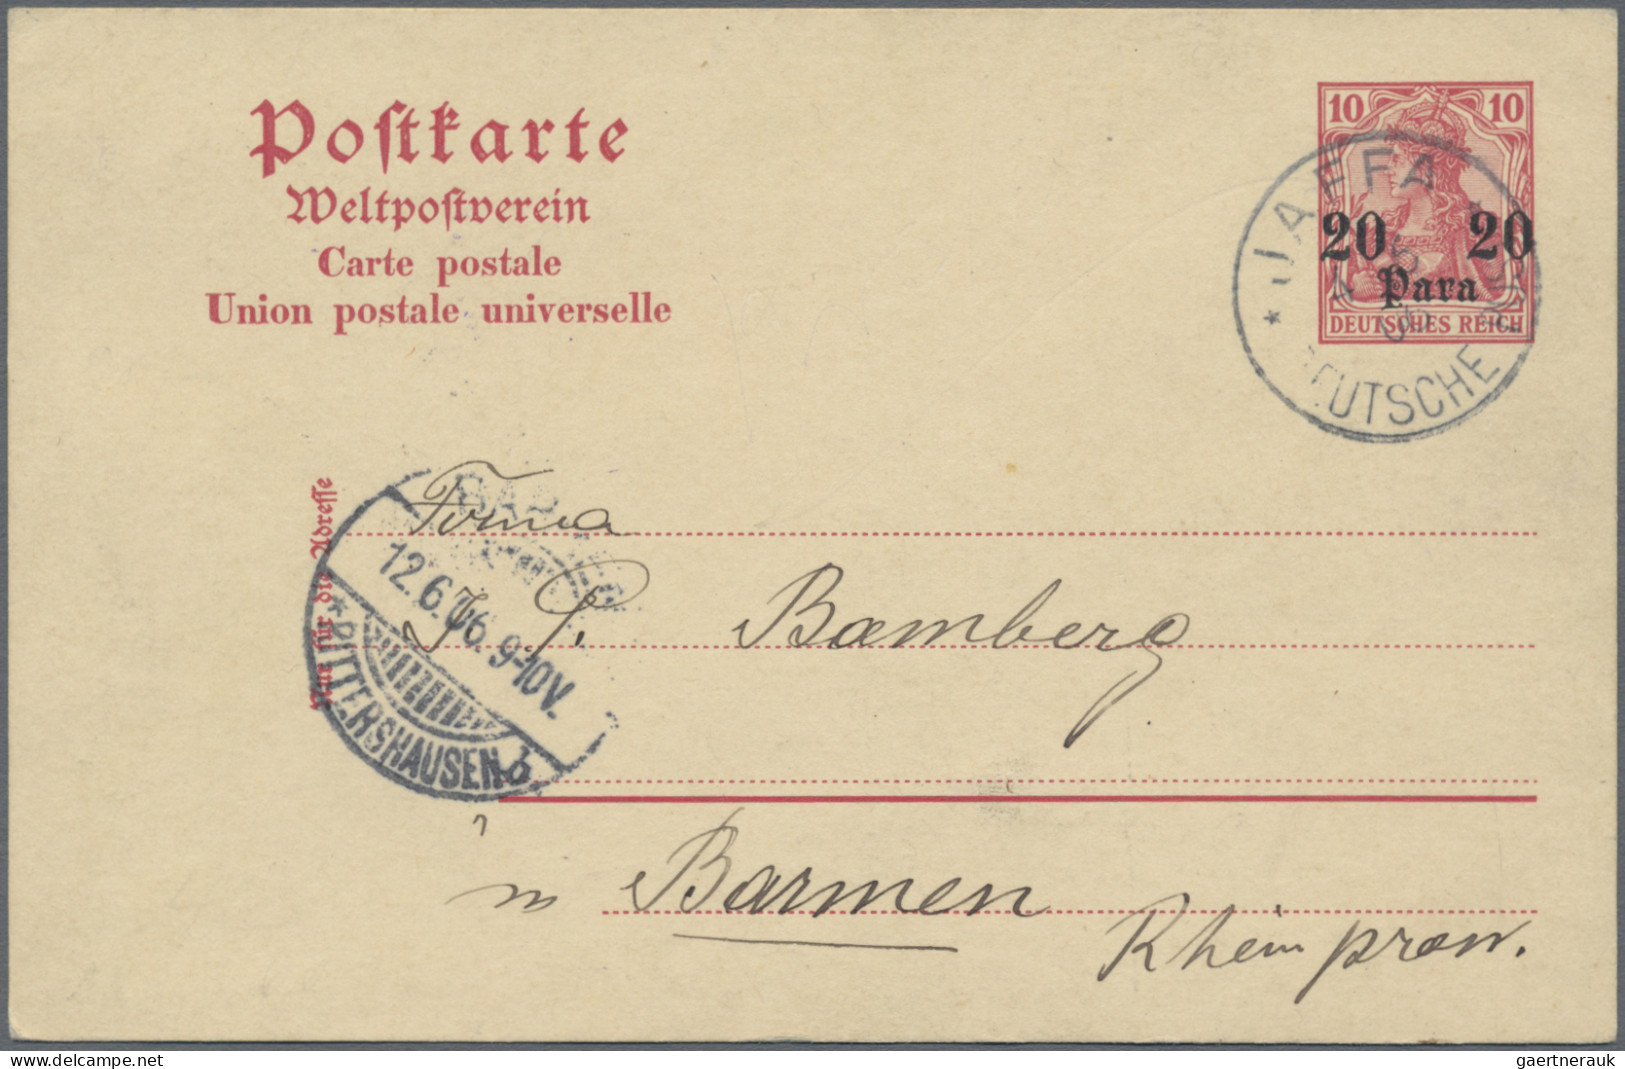 Deutsche Post in der Türkei - Ganzsachen: 1896/1912, saubere Partie von 17 gebra